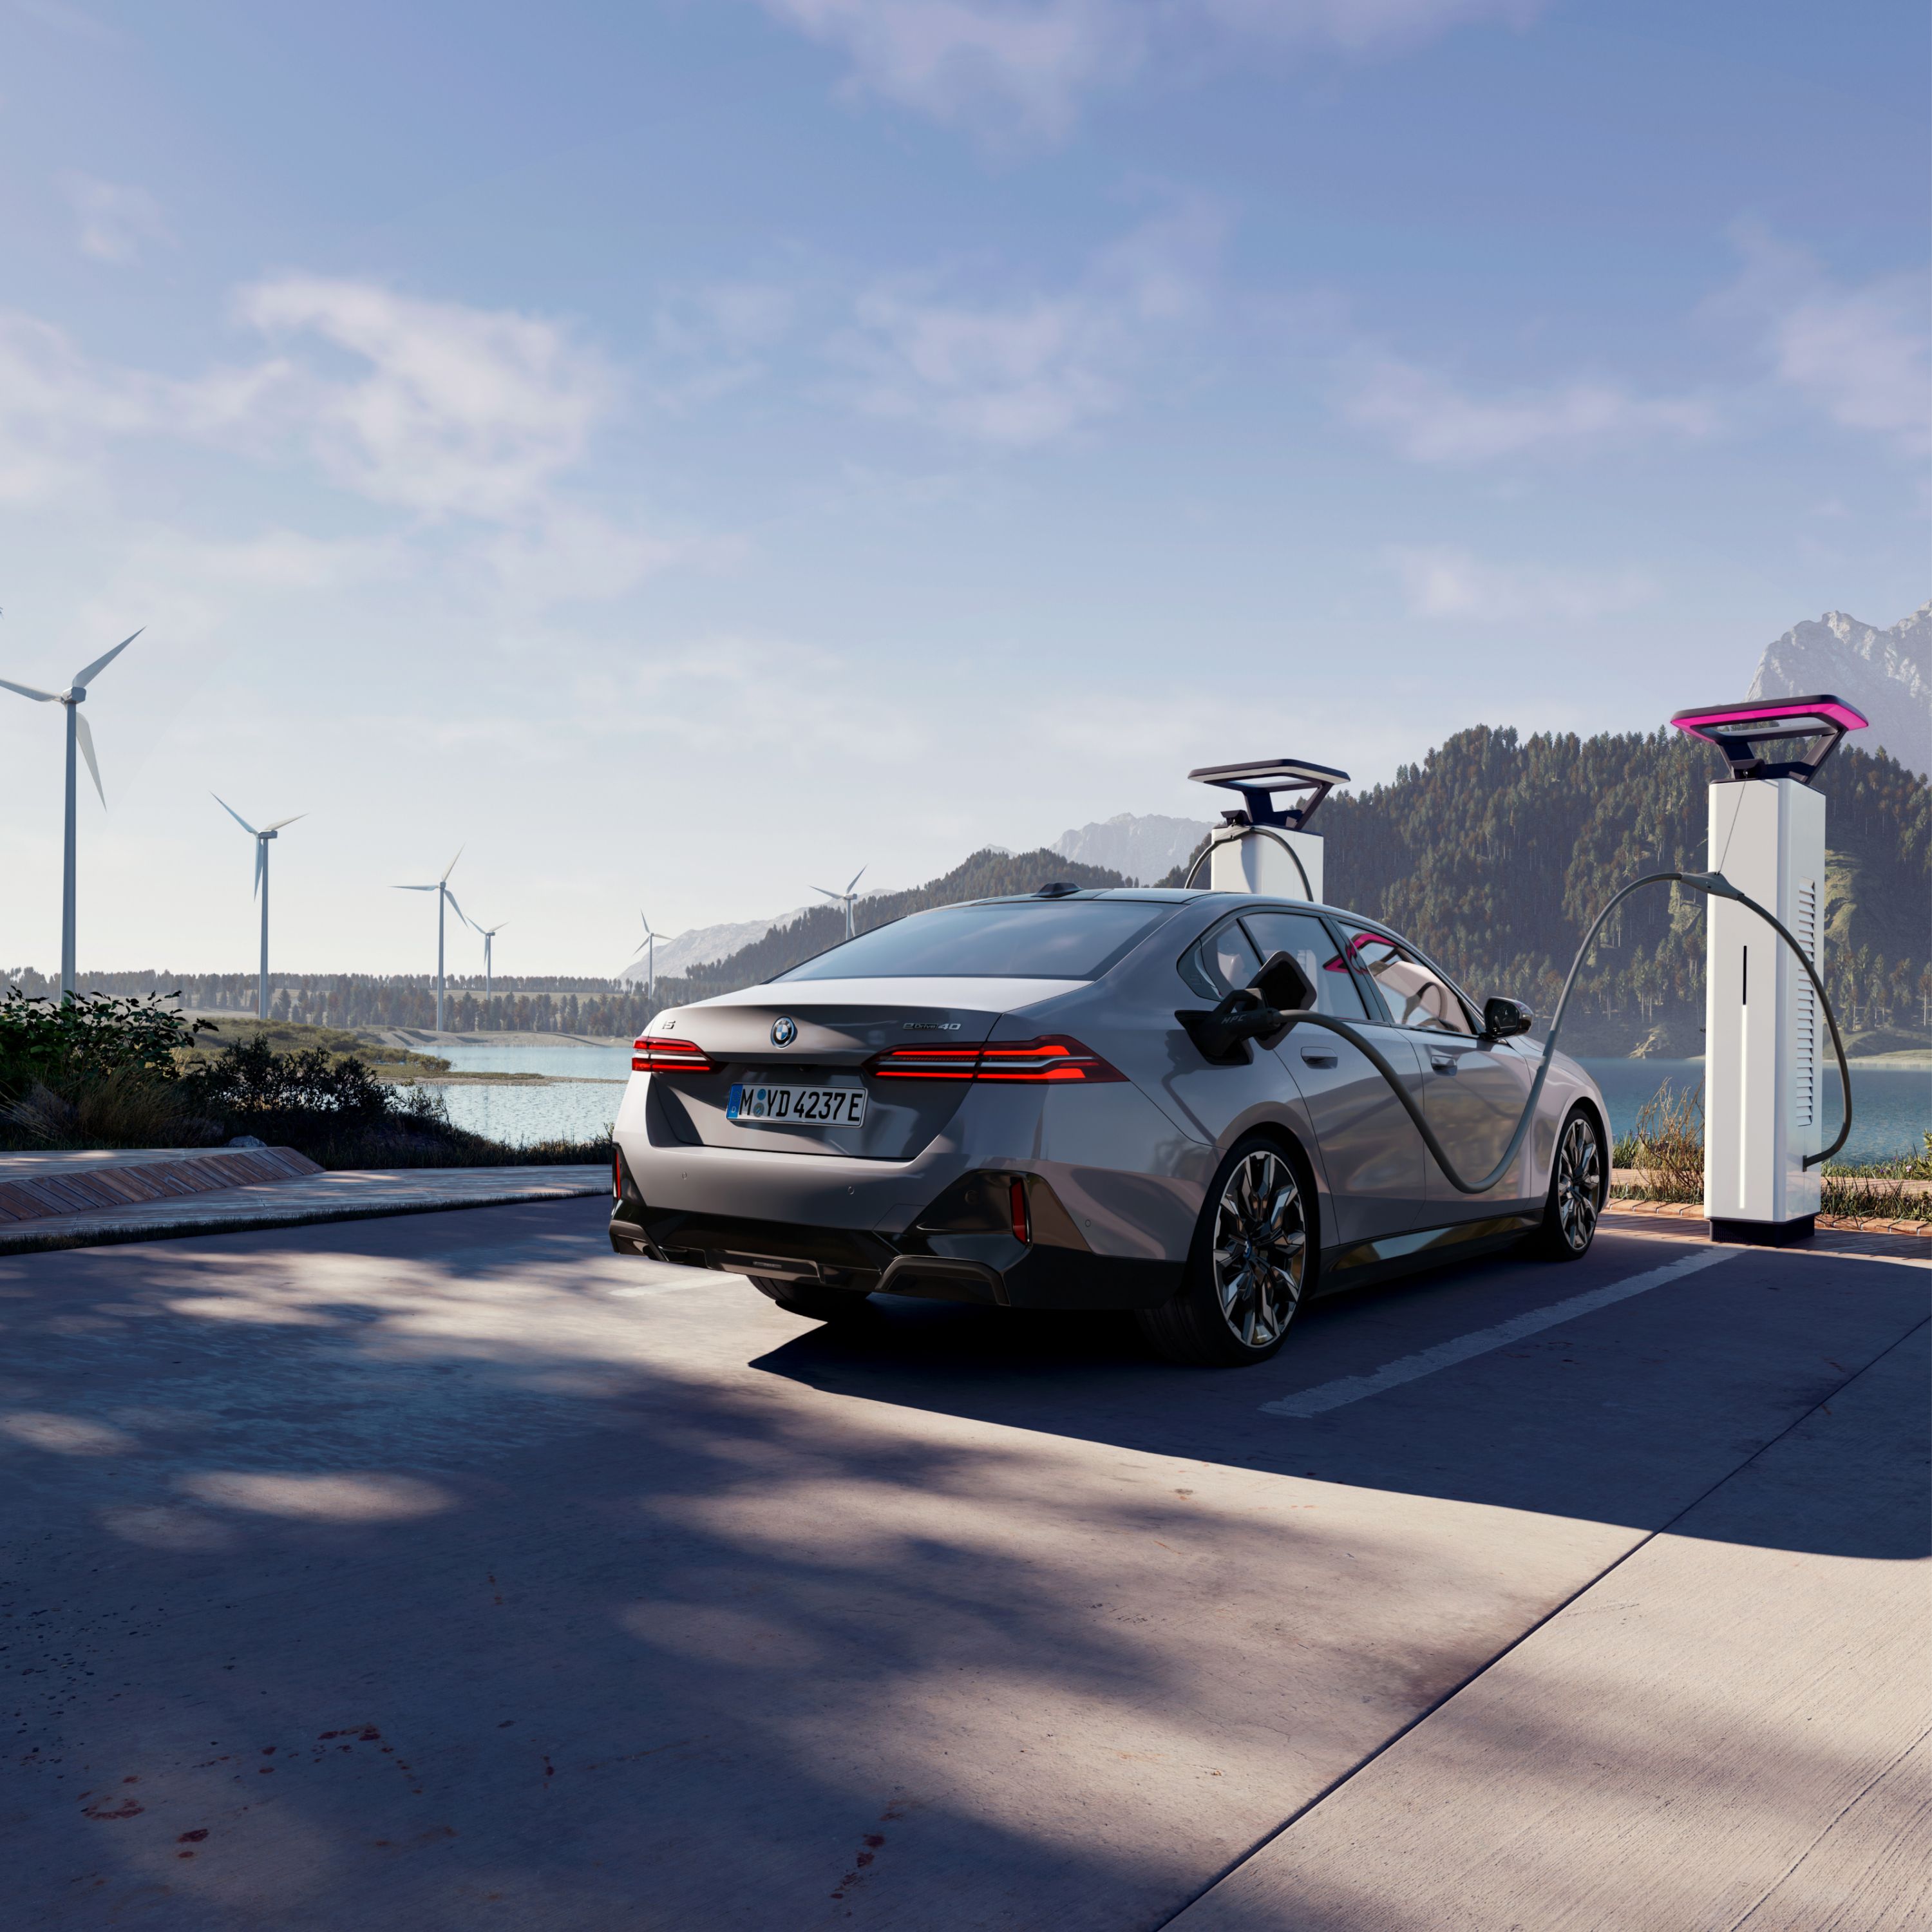 BMW udržateľnosť 2023, veterná energia